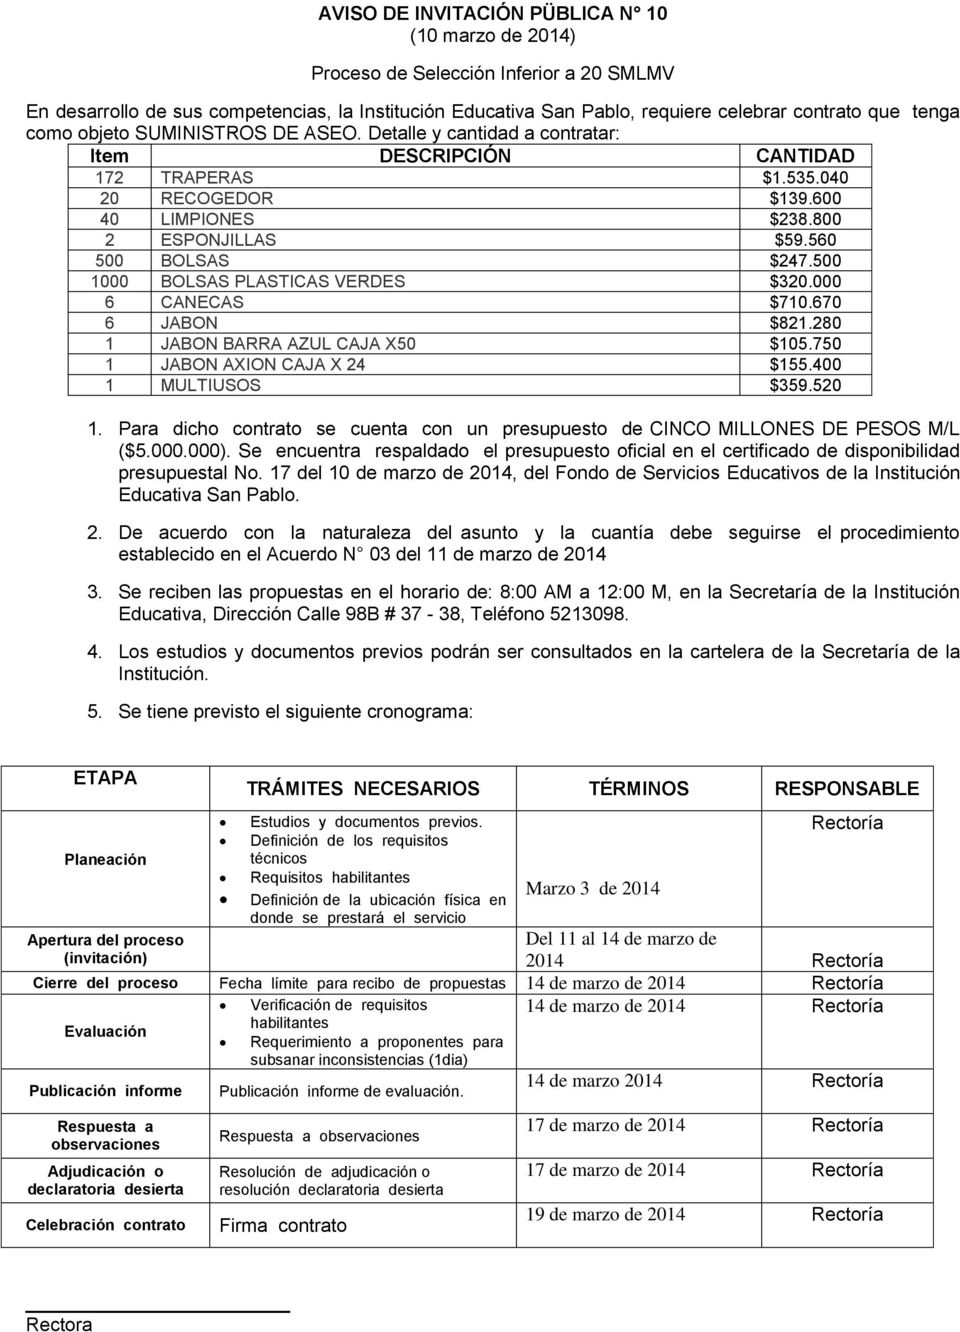 Para dicho contrato se cuenta con un presupuesto de CINCO MILLONES DE PESOS M/L ($5.000.000). Se encuentra respaldado el presupuesto oficial en el certificado de disponibilidad presupuestal No.